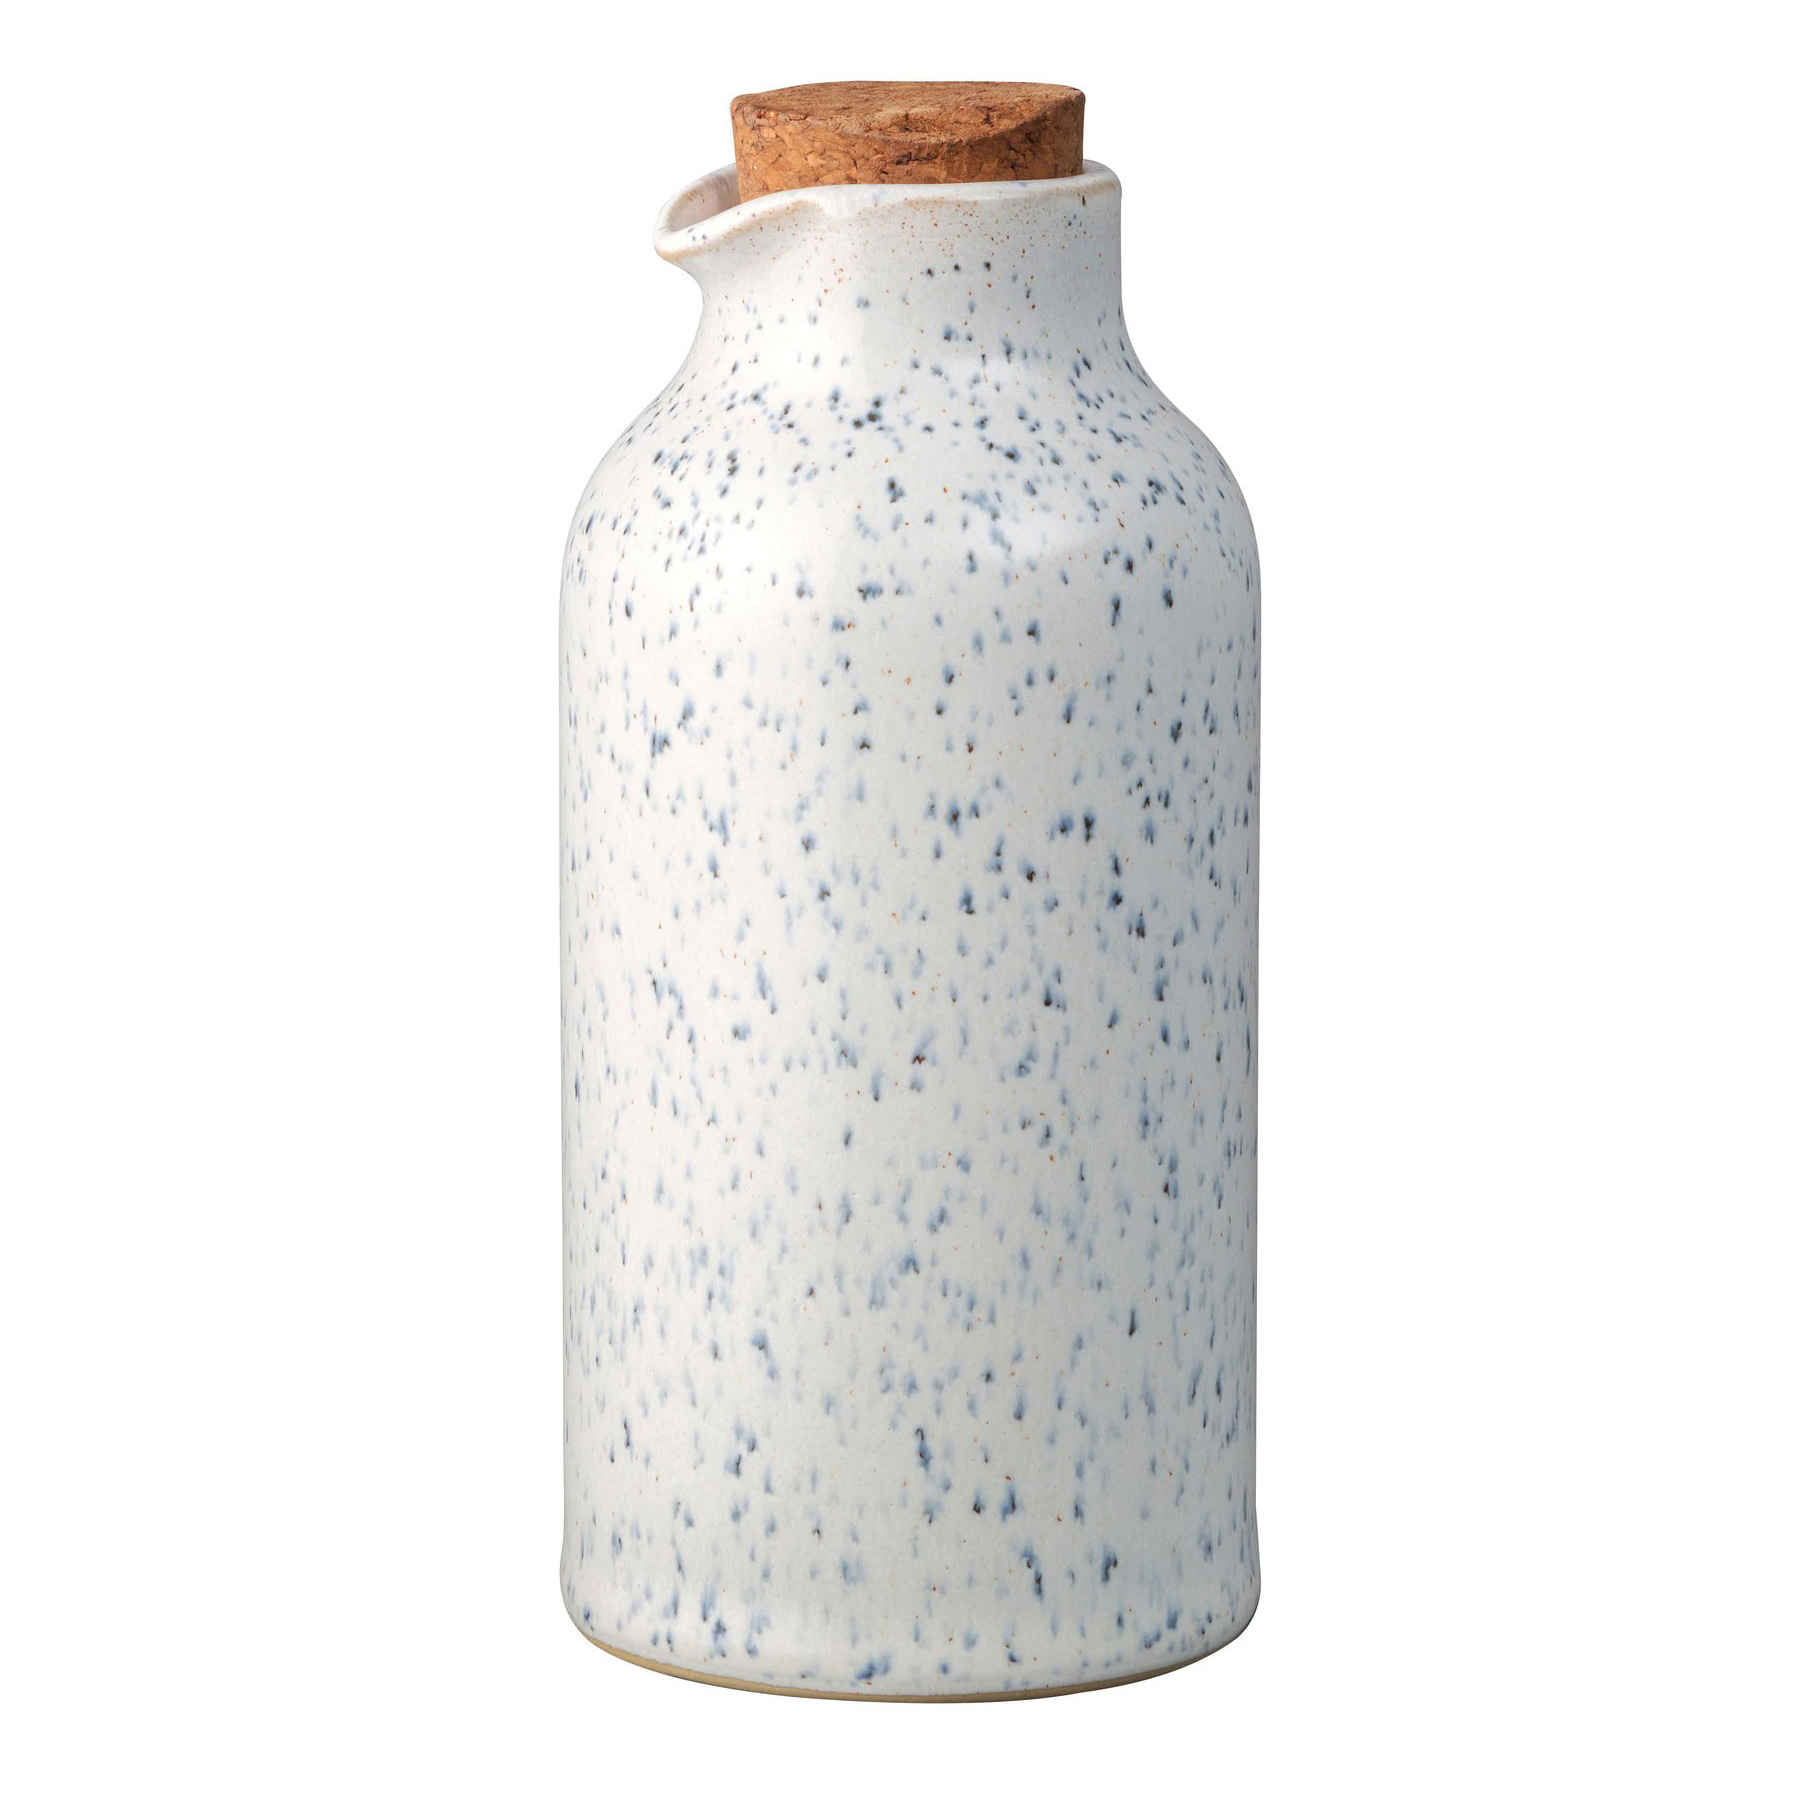 Бутылка Denby Студио Блю Мрамор для масла 0,24 л стол cremona 140 kl 99 белый мрамор матовый итальянская керамика